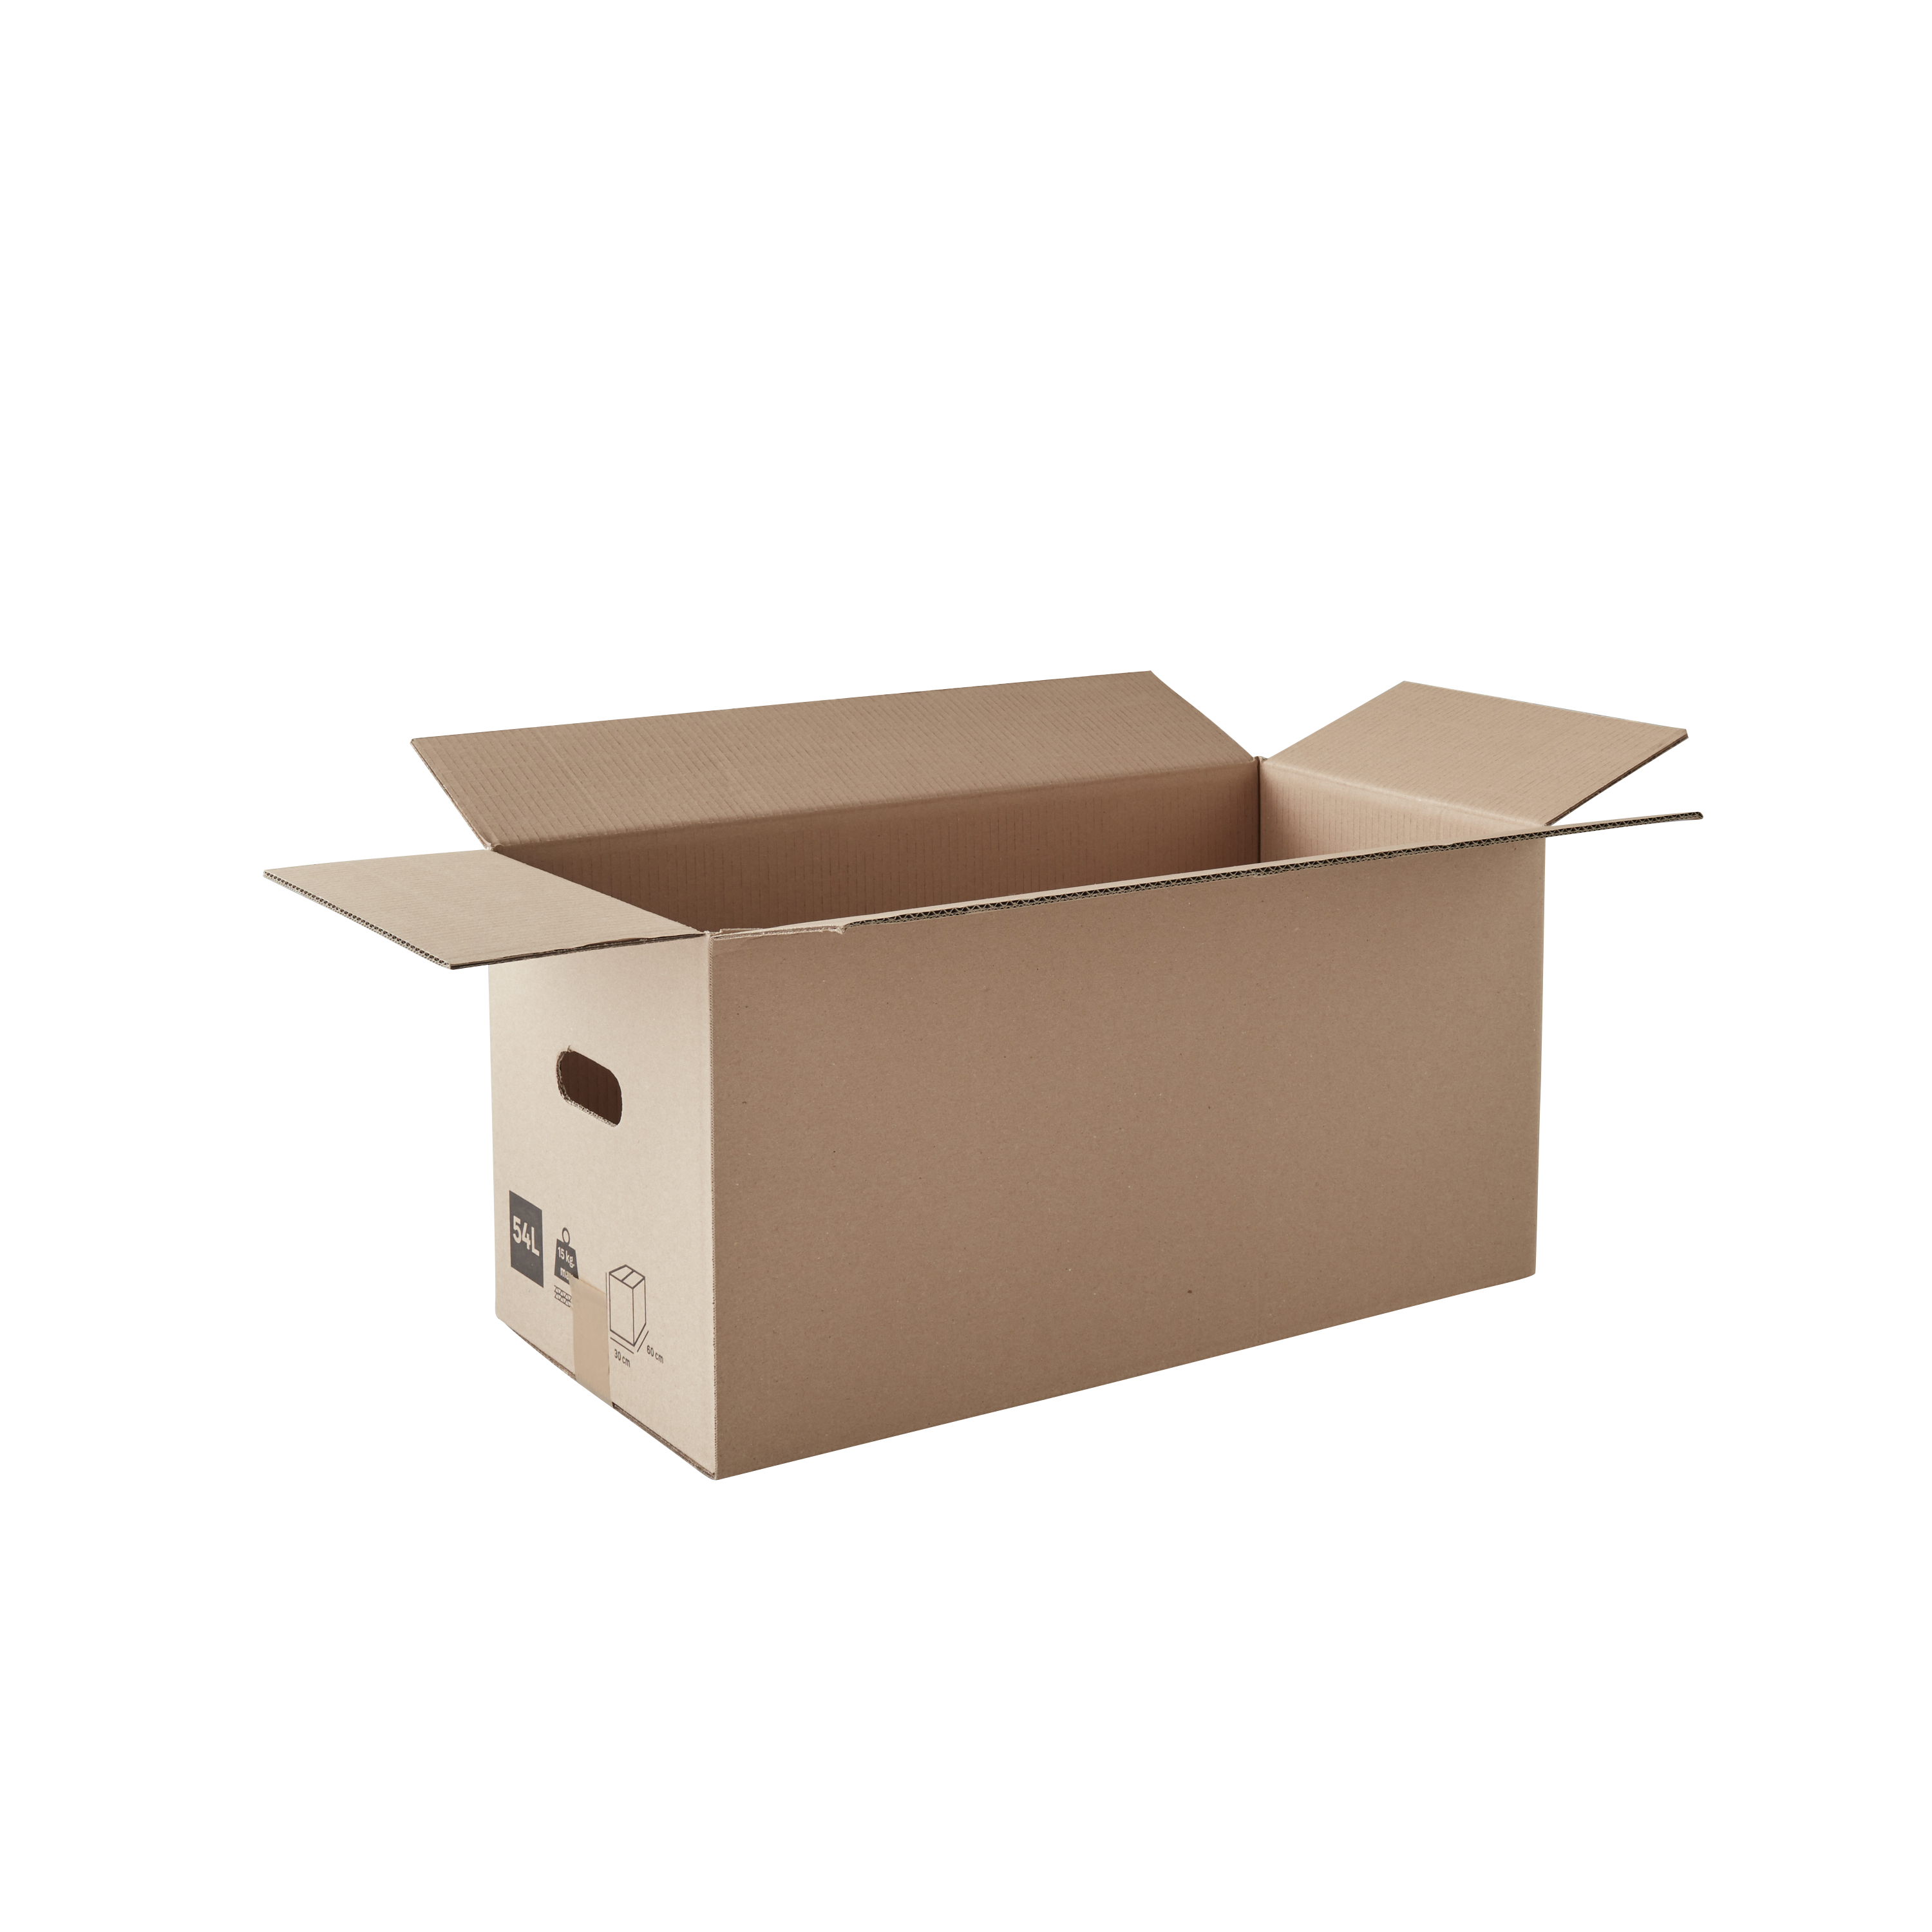 Caja de mudanza de 54 l de 30x60x30 cm y carga máx. 15 kg